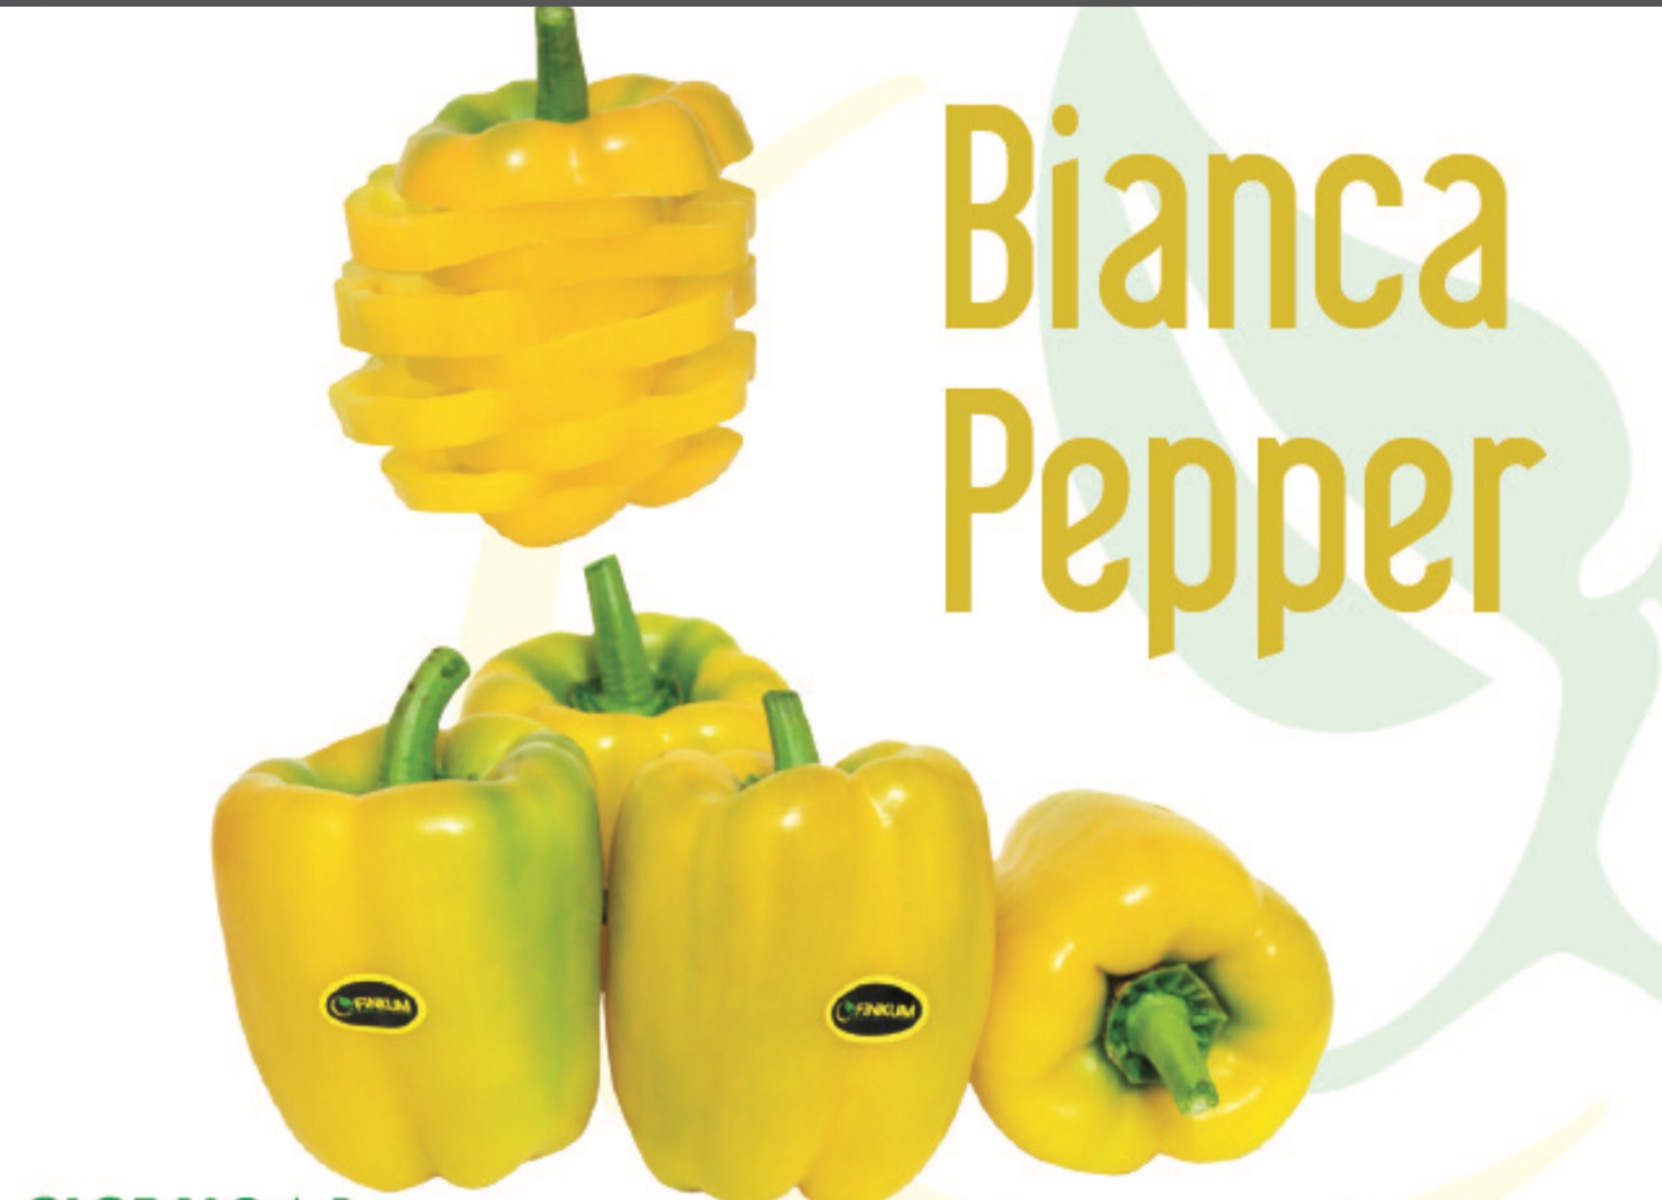 Bianca pepper